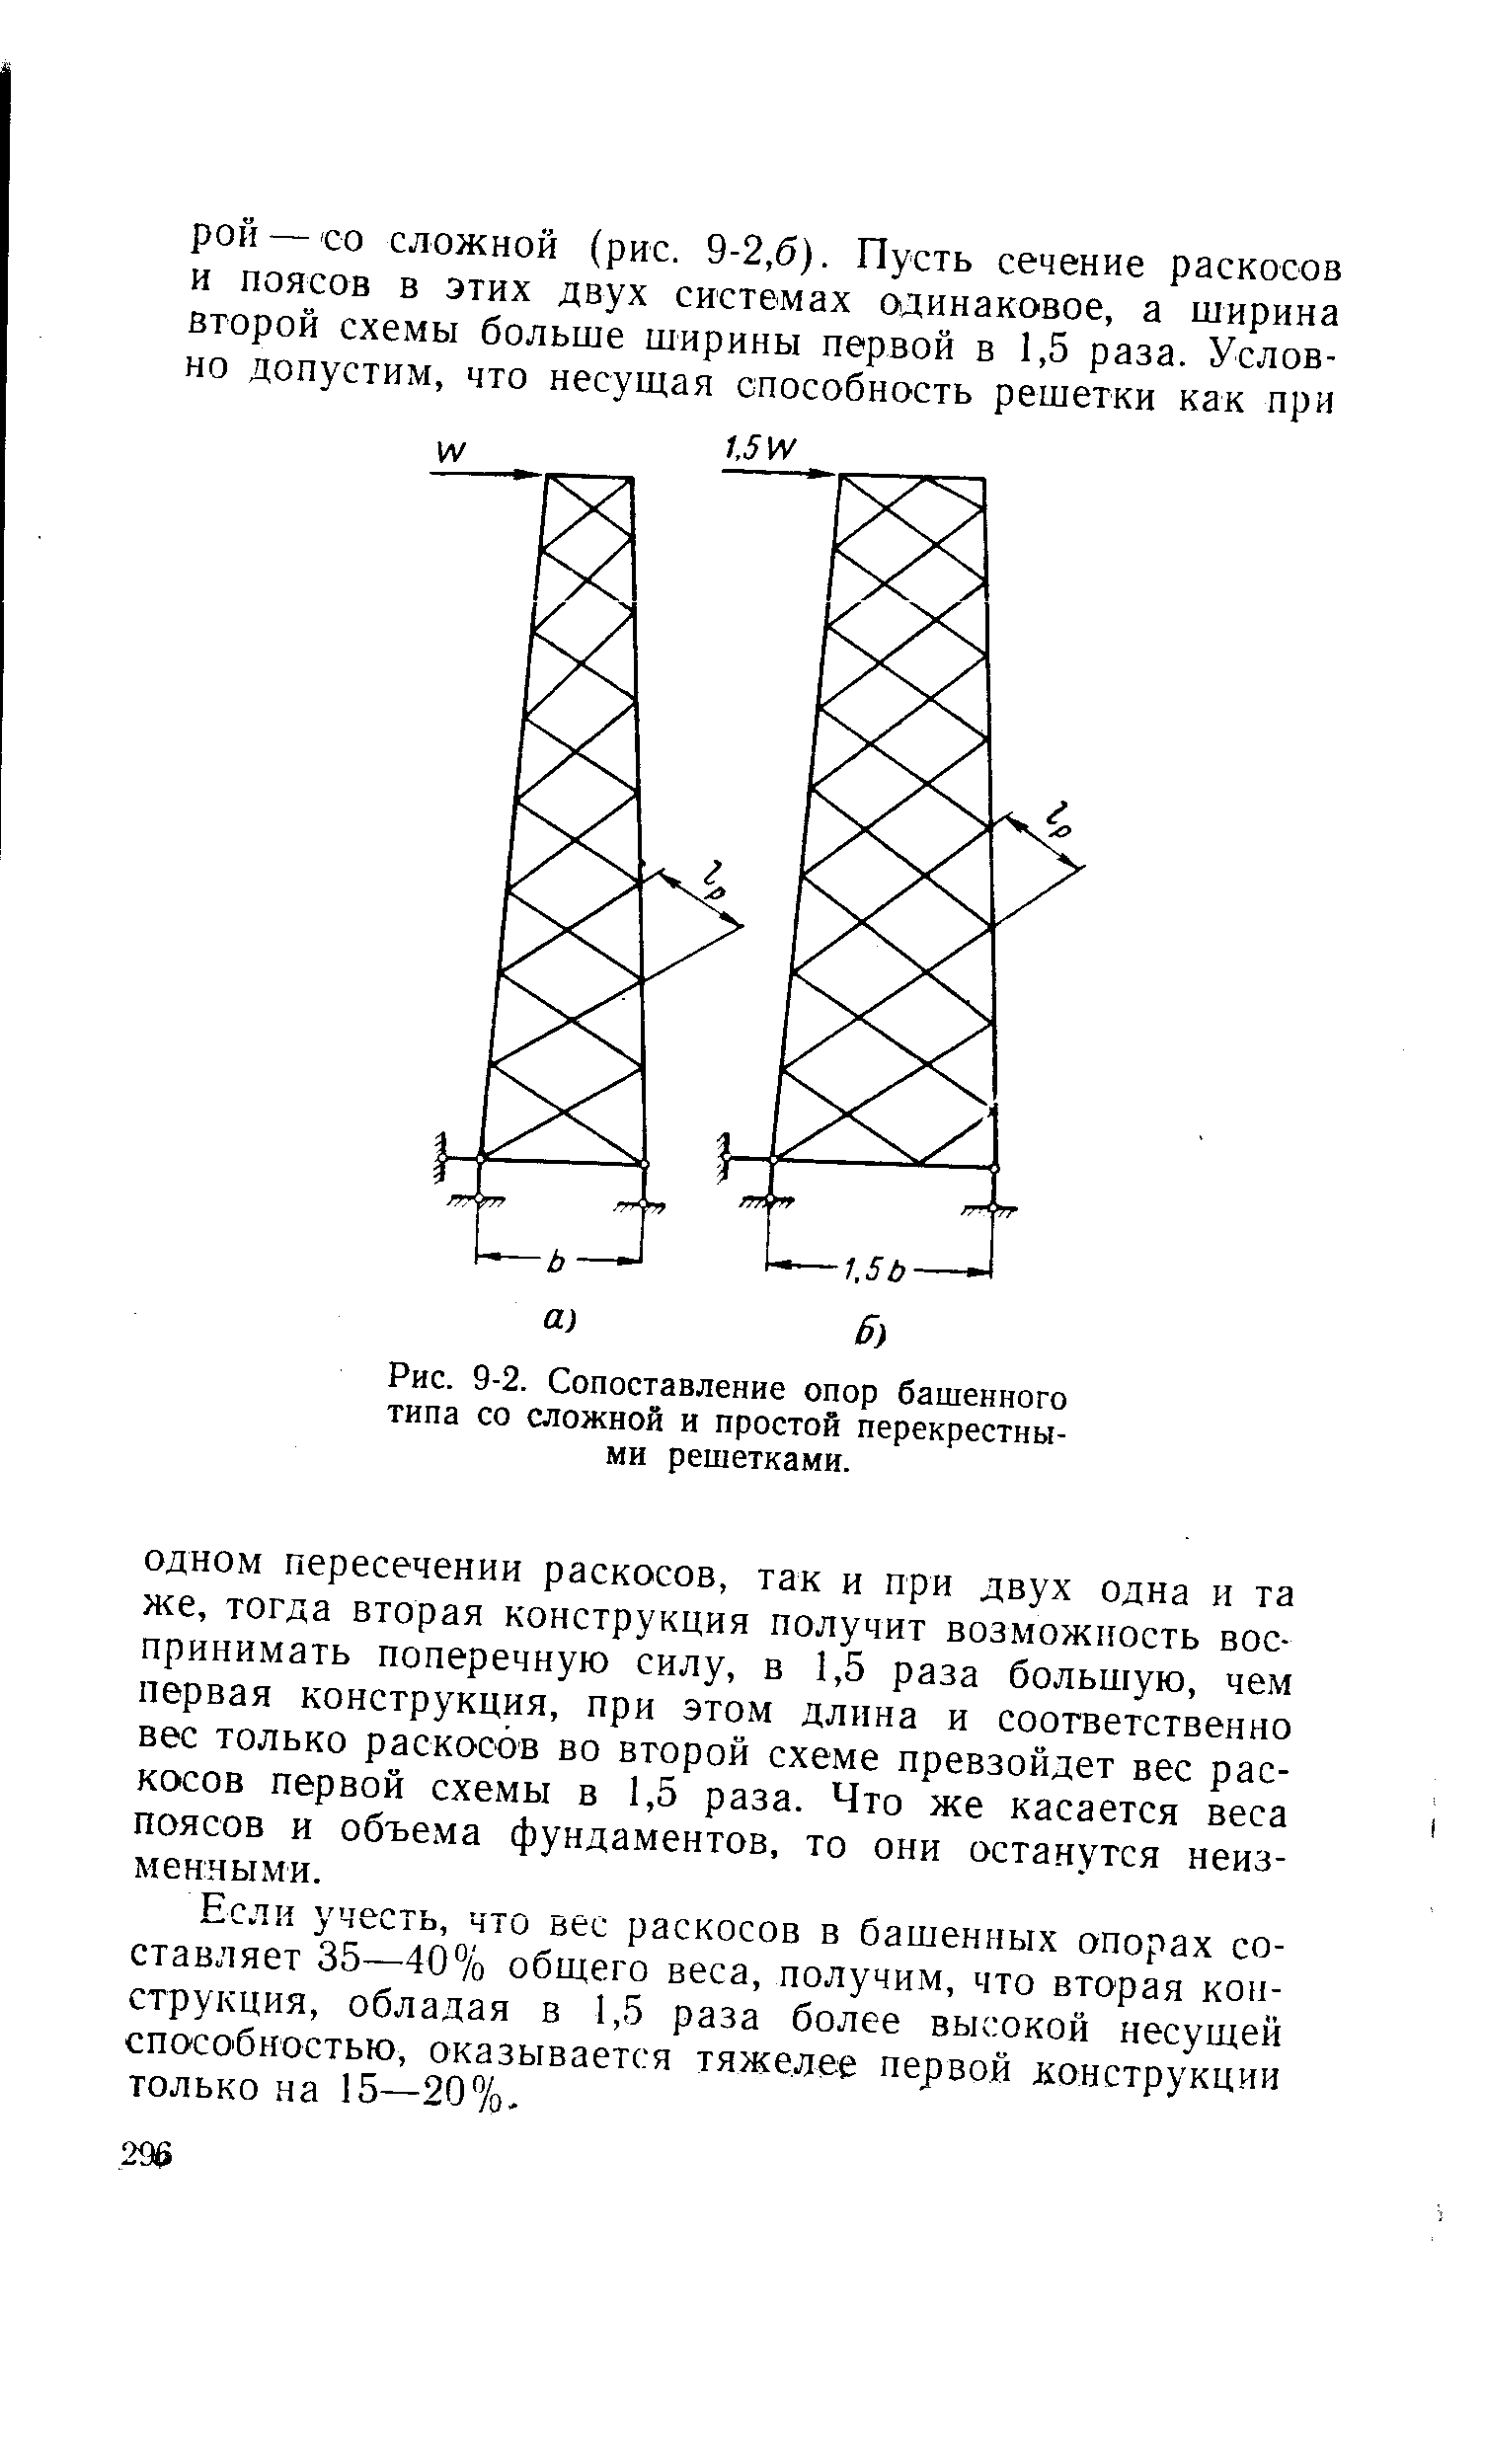 Рис. 9-2. Сопоставление опор башенного типа со сложной и простой перекрестными решетками.
